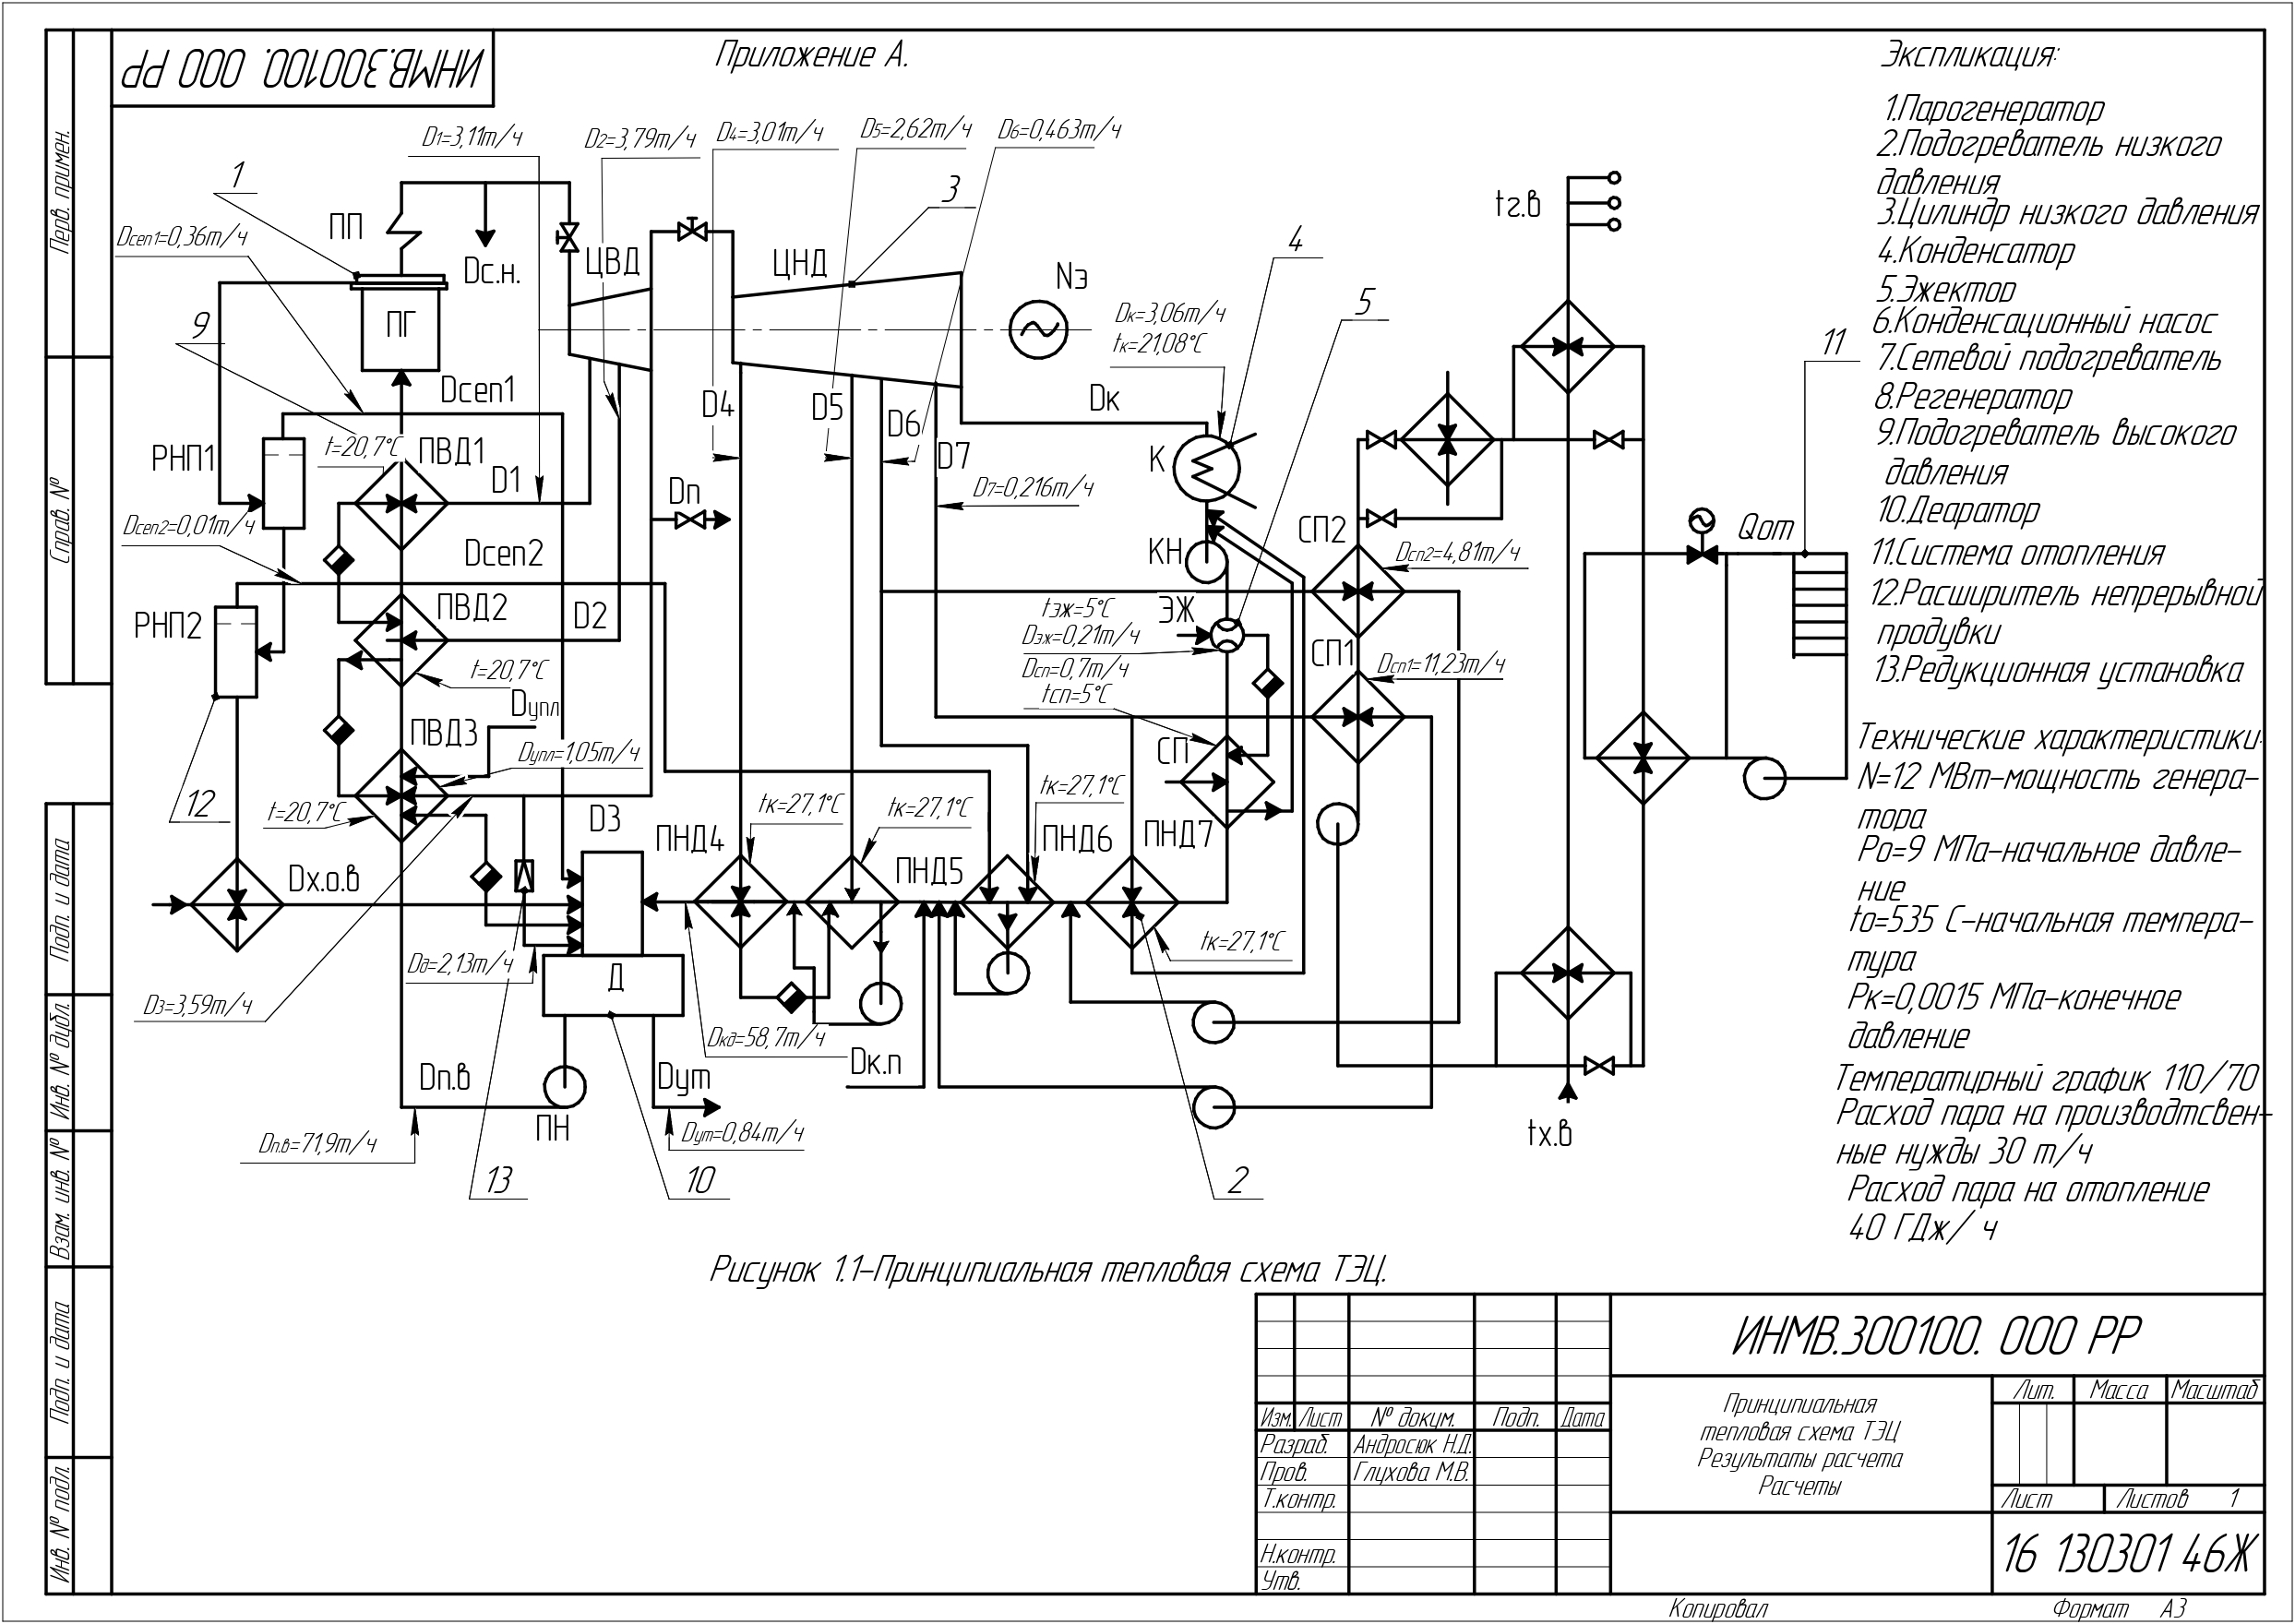 Дипломная работа: Расчет принципиальной тепловой схемы паротурбинной установки типа Т-100-130